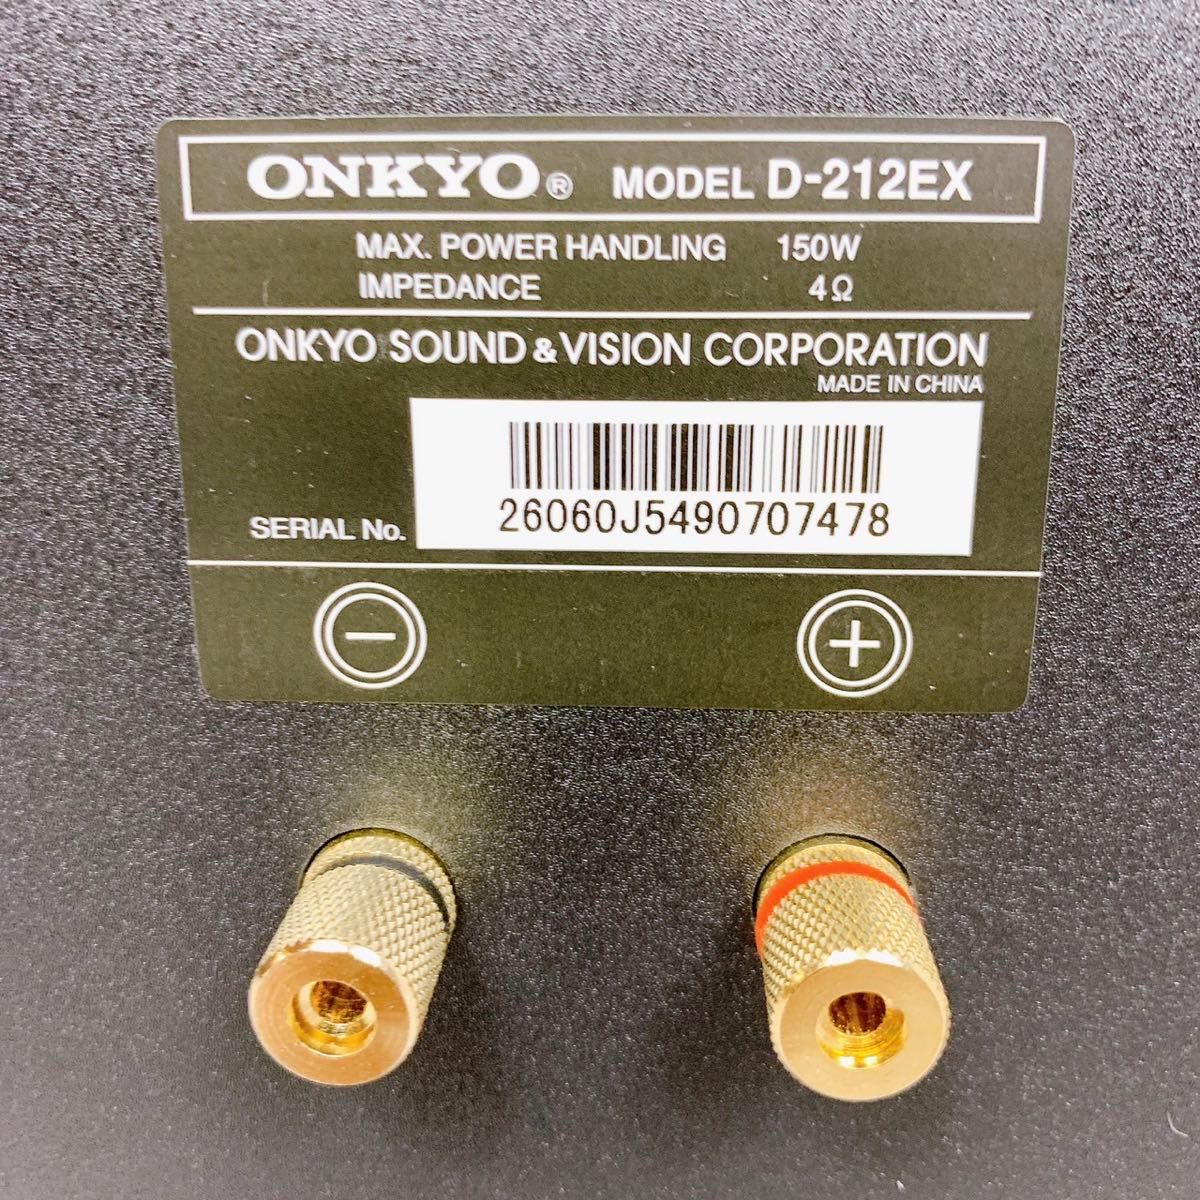 【美品】ONKYO D-212EX スピーカーシステム ペア 2台 シリアル同番 オンキョー 高音質 ブックシェルフスピーカー